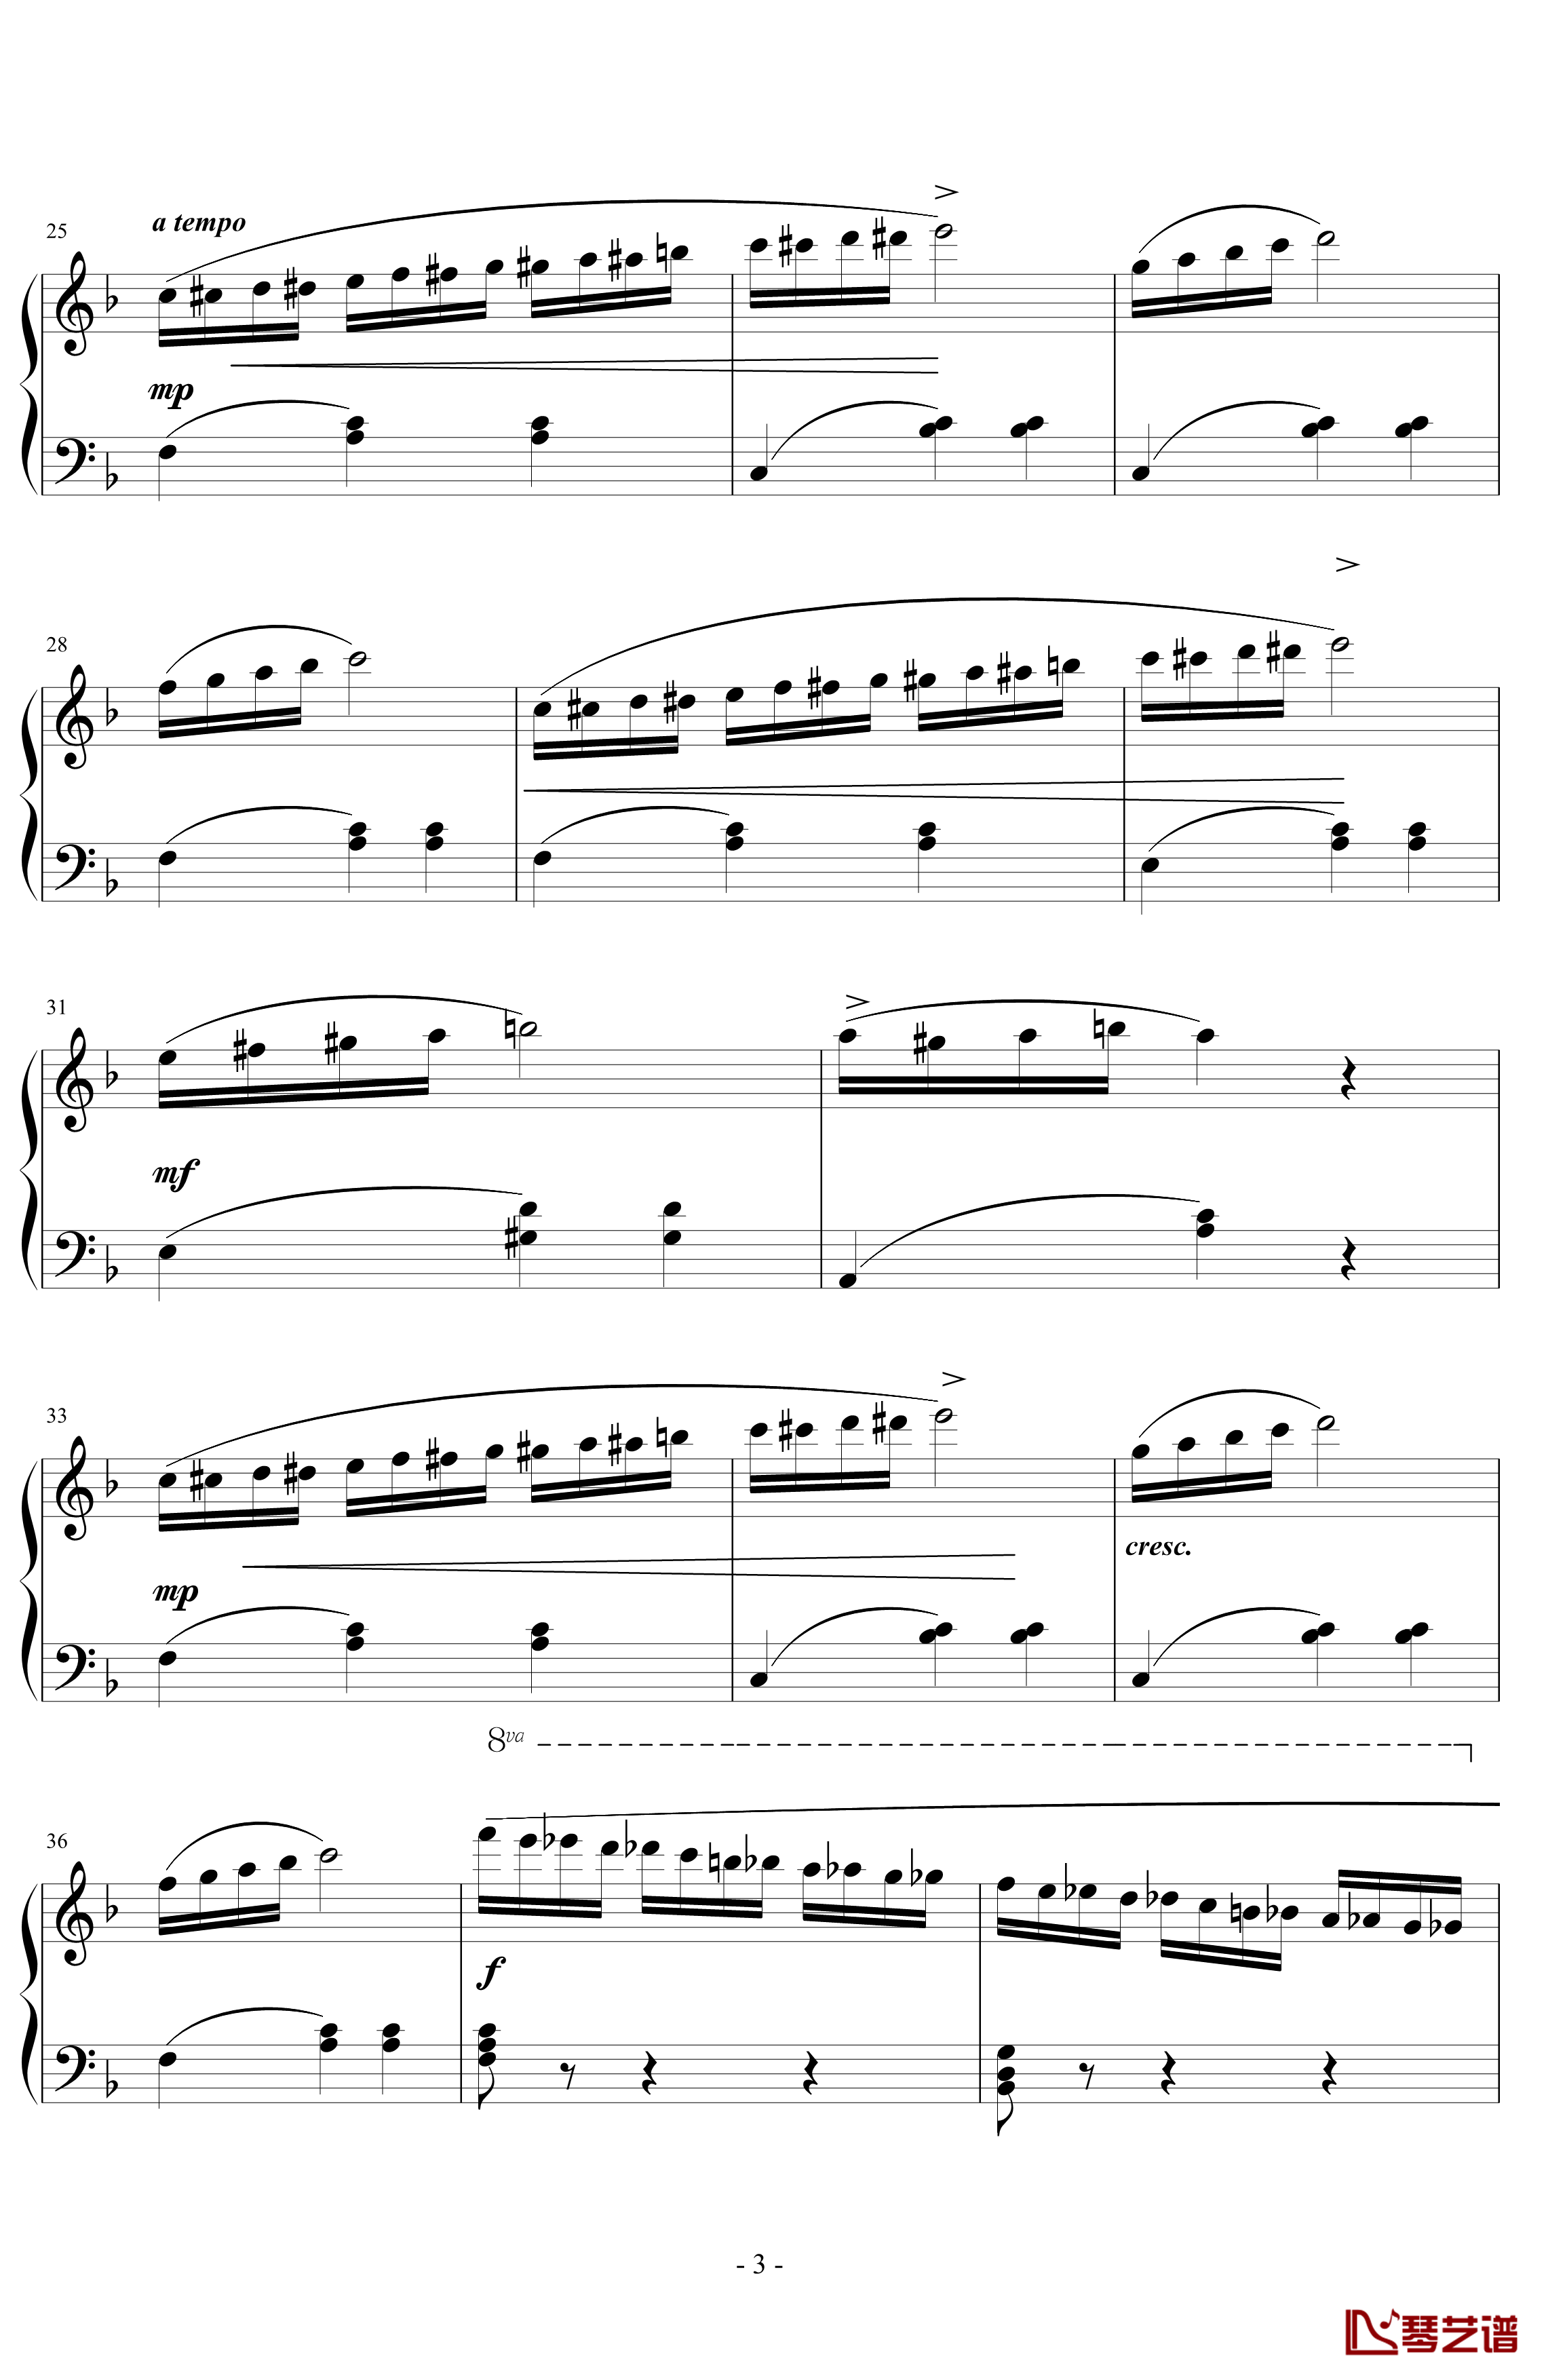 练习曲钢琴谱-斯德瑞鲍格3